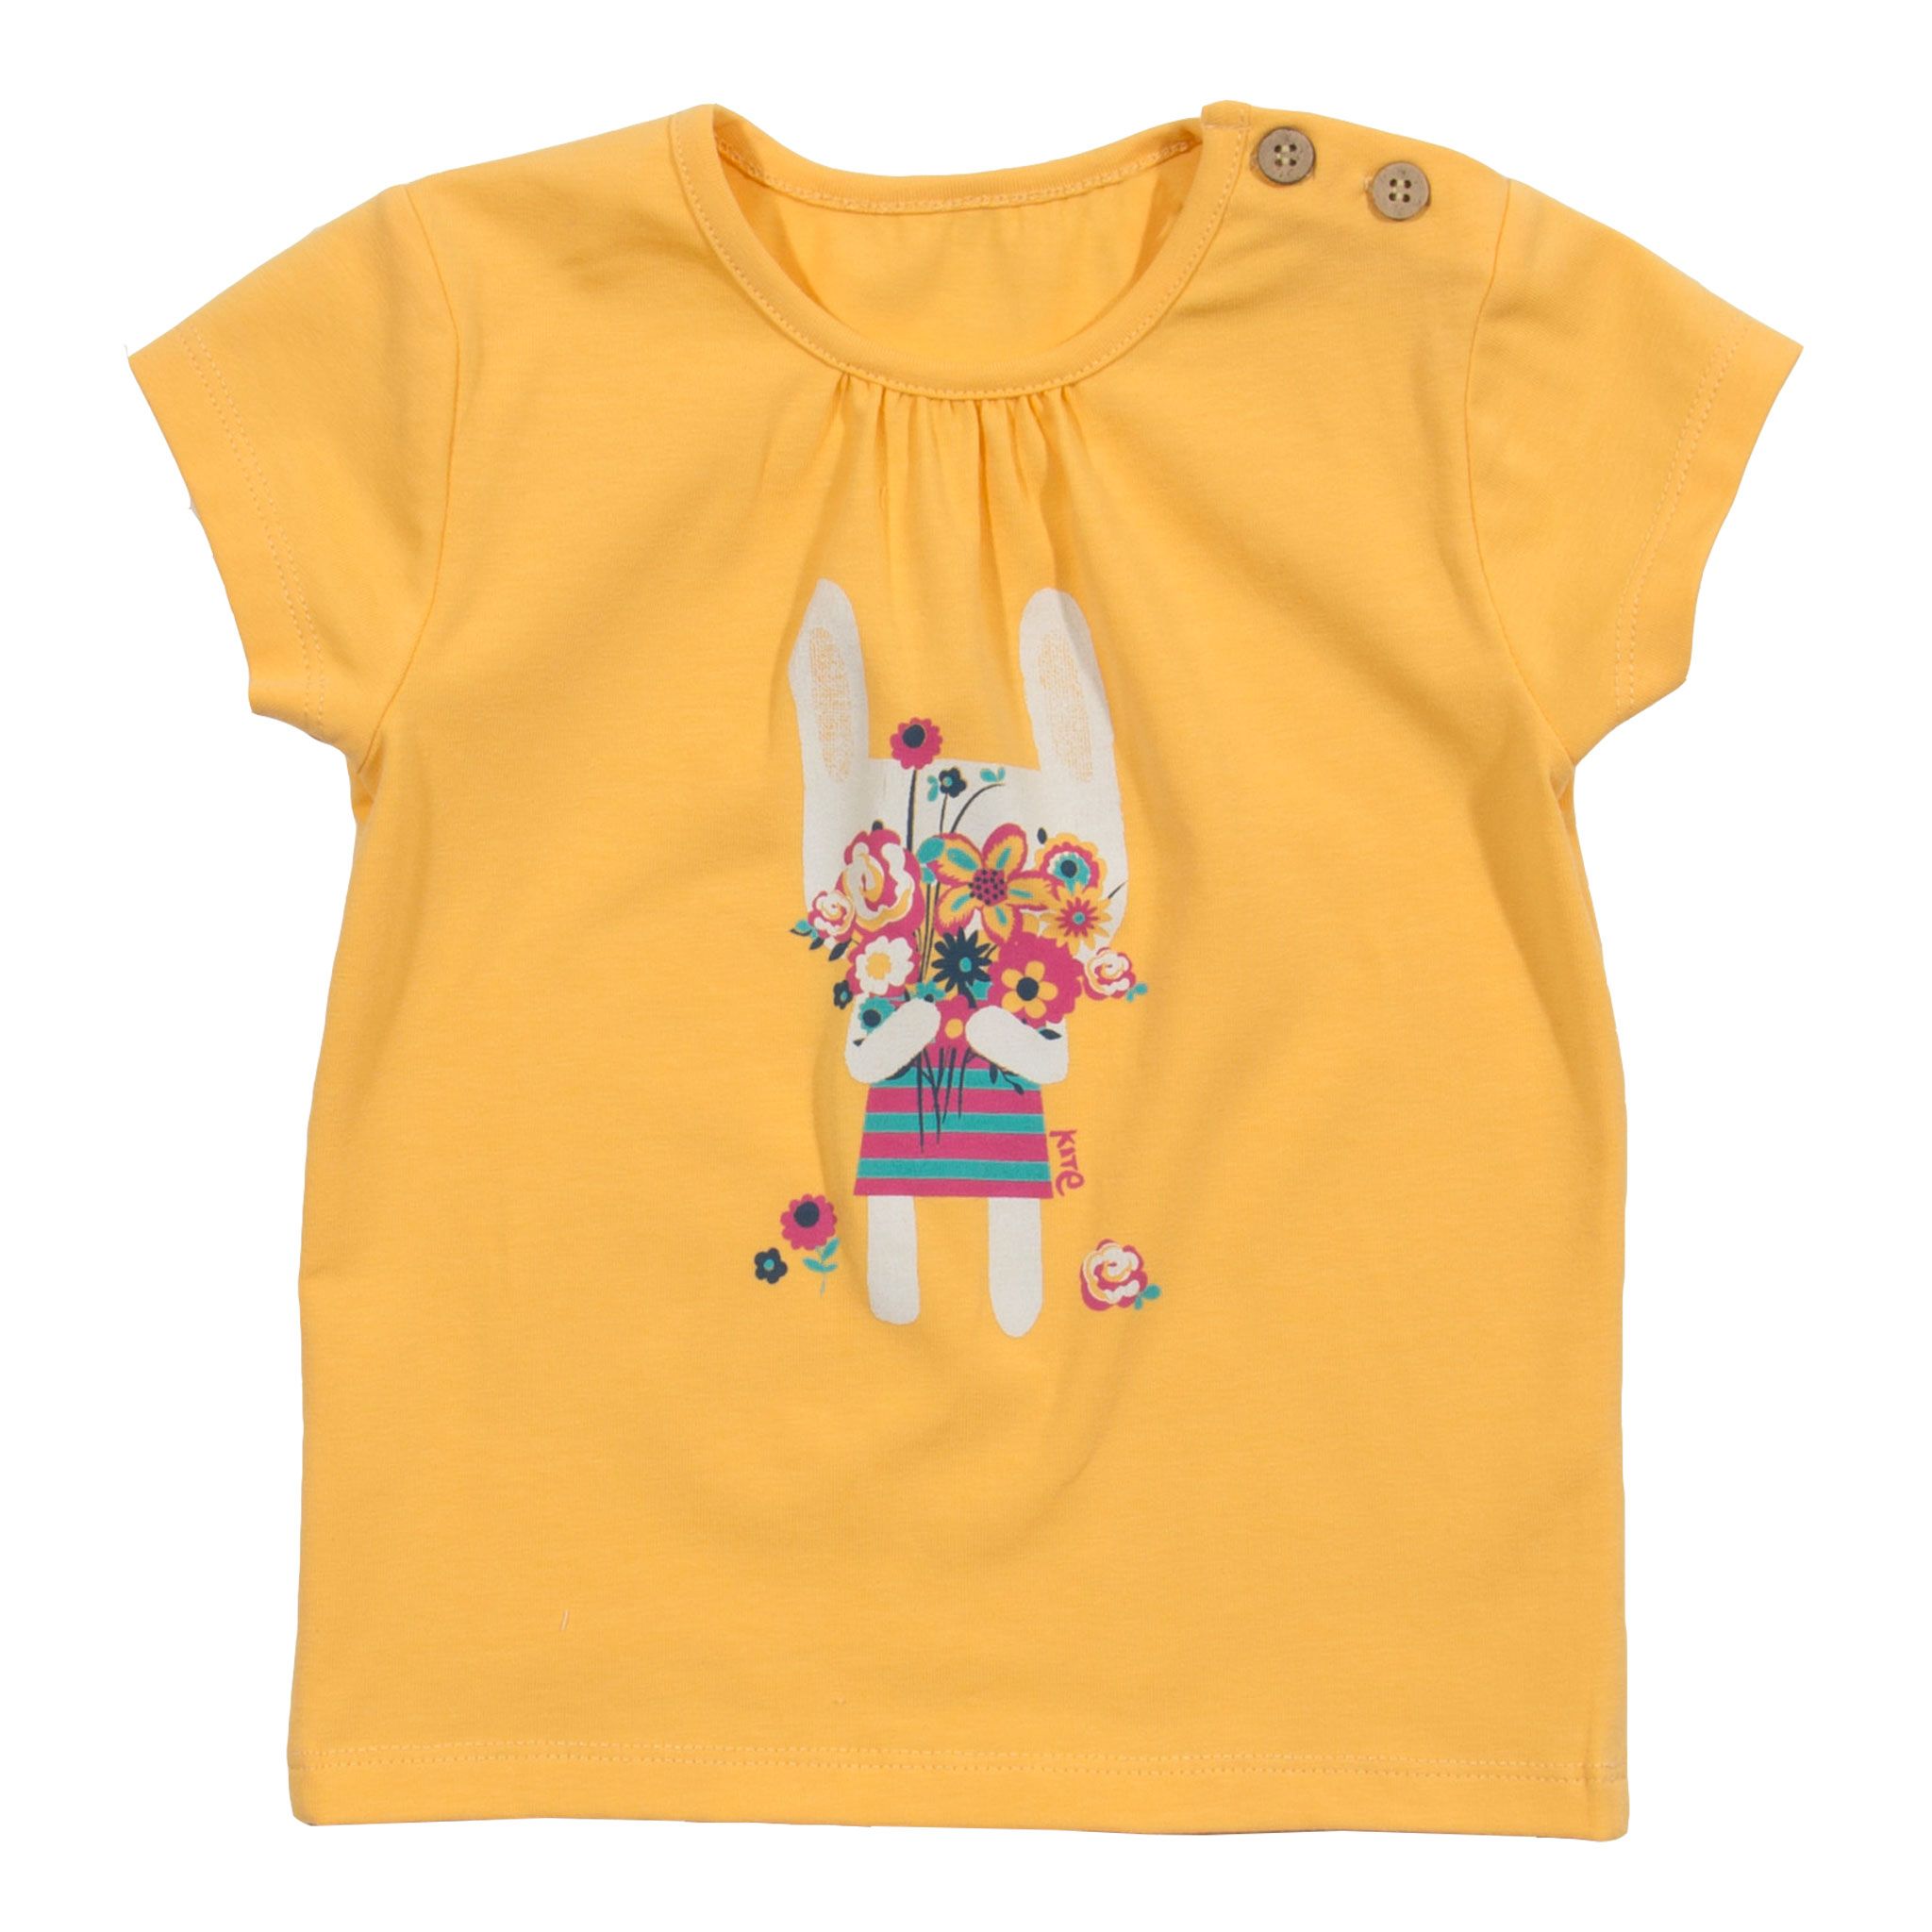 Kite T-shirt Baby Girl short sleeved